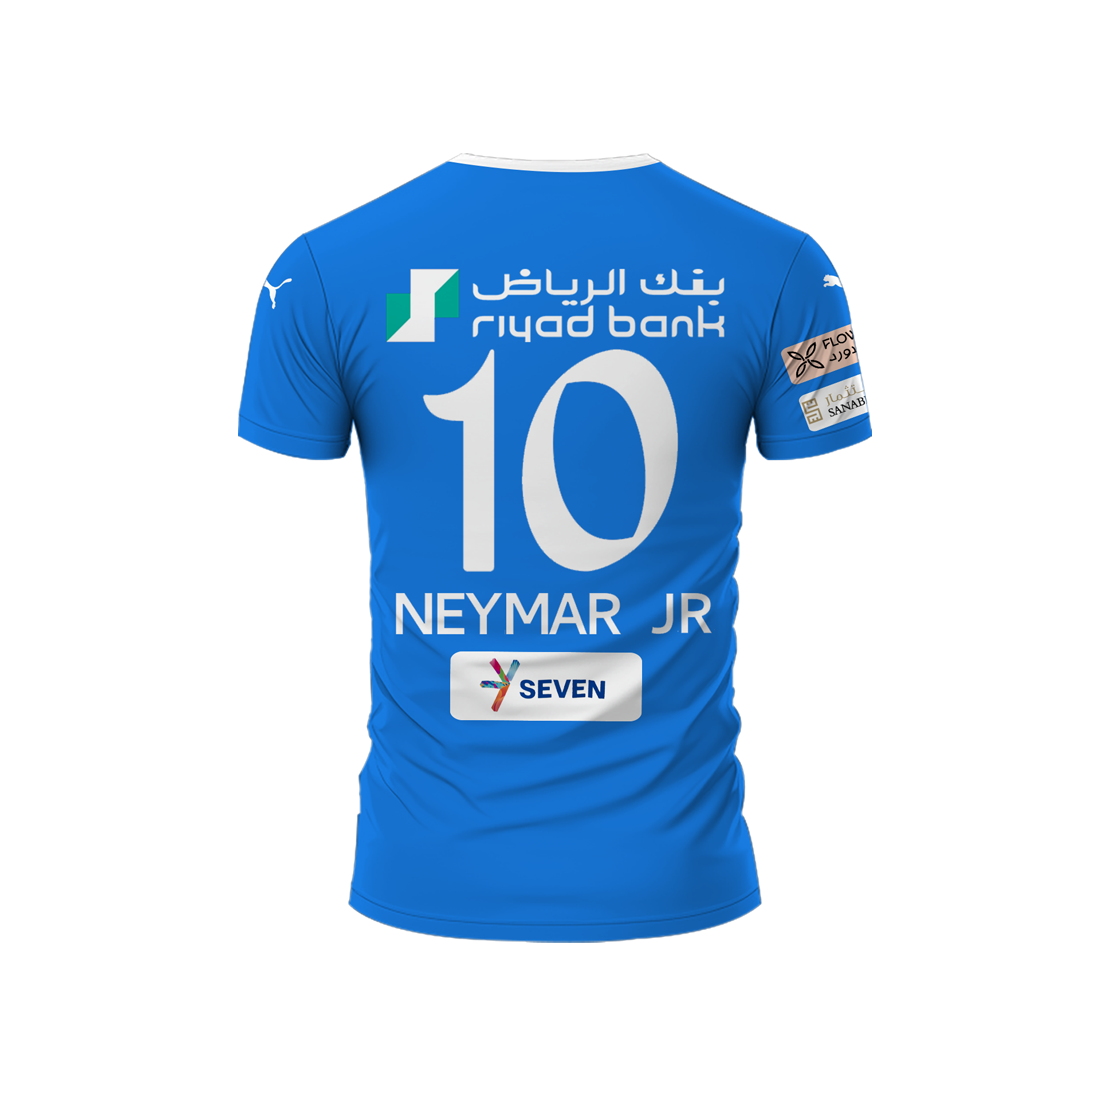 Saudi Arabia: Neymar jerseys sell out in Riyadh